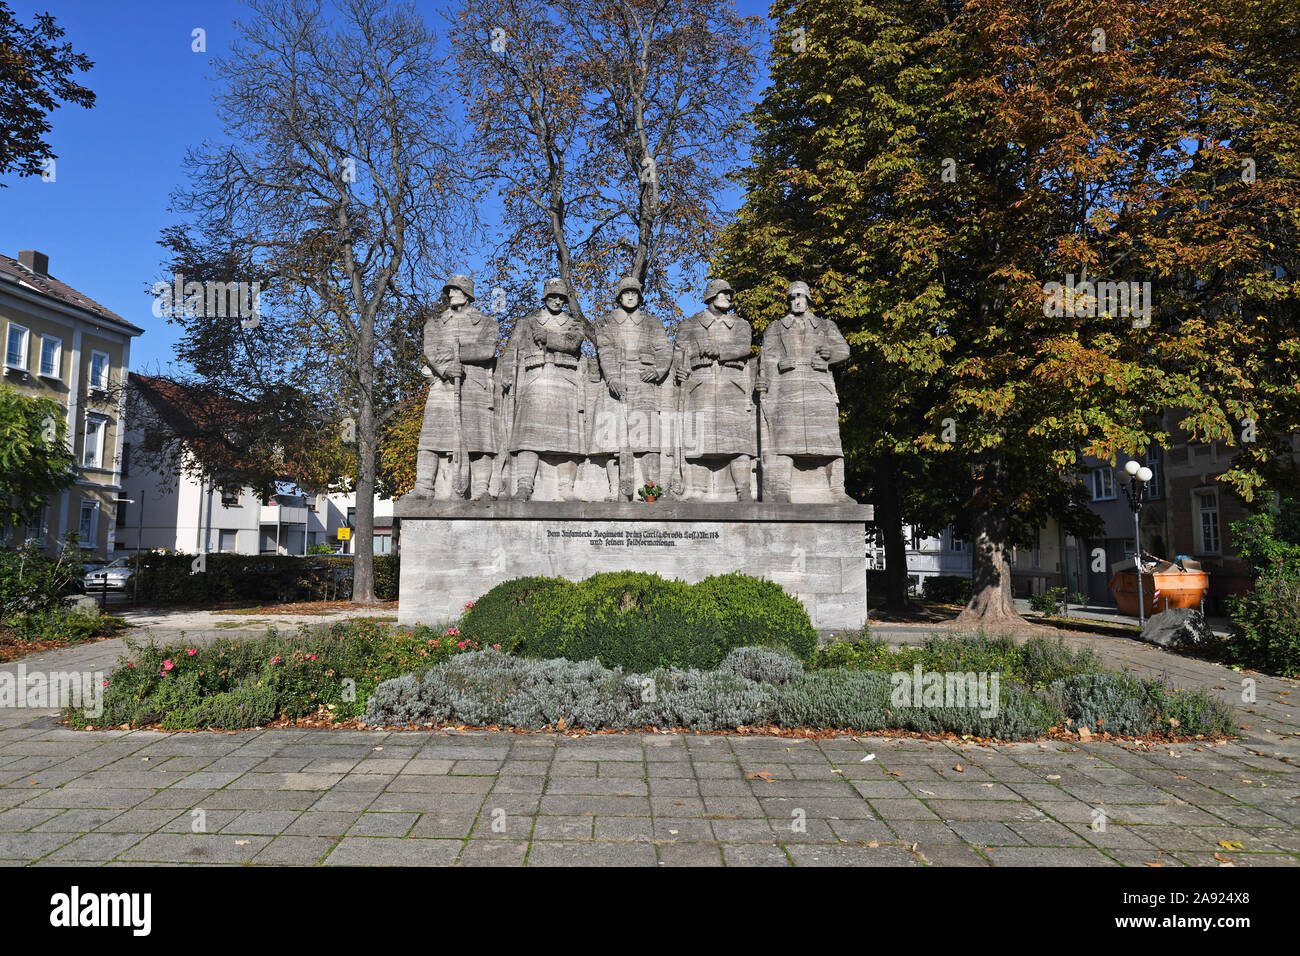 Stone War Memorial raffigurante cinque soldati dedicata al reggimento di Fanteria Principe Carl' No.118 nella città di Worms in Germania Foto Stock